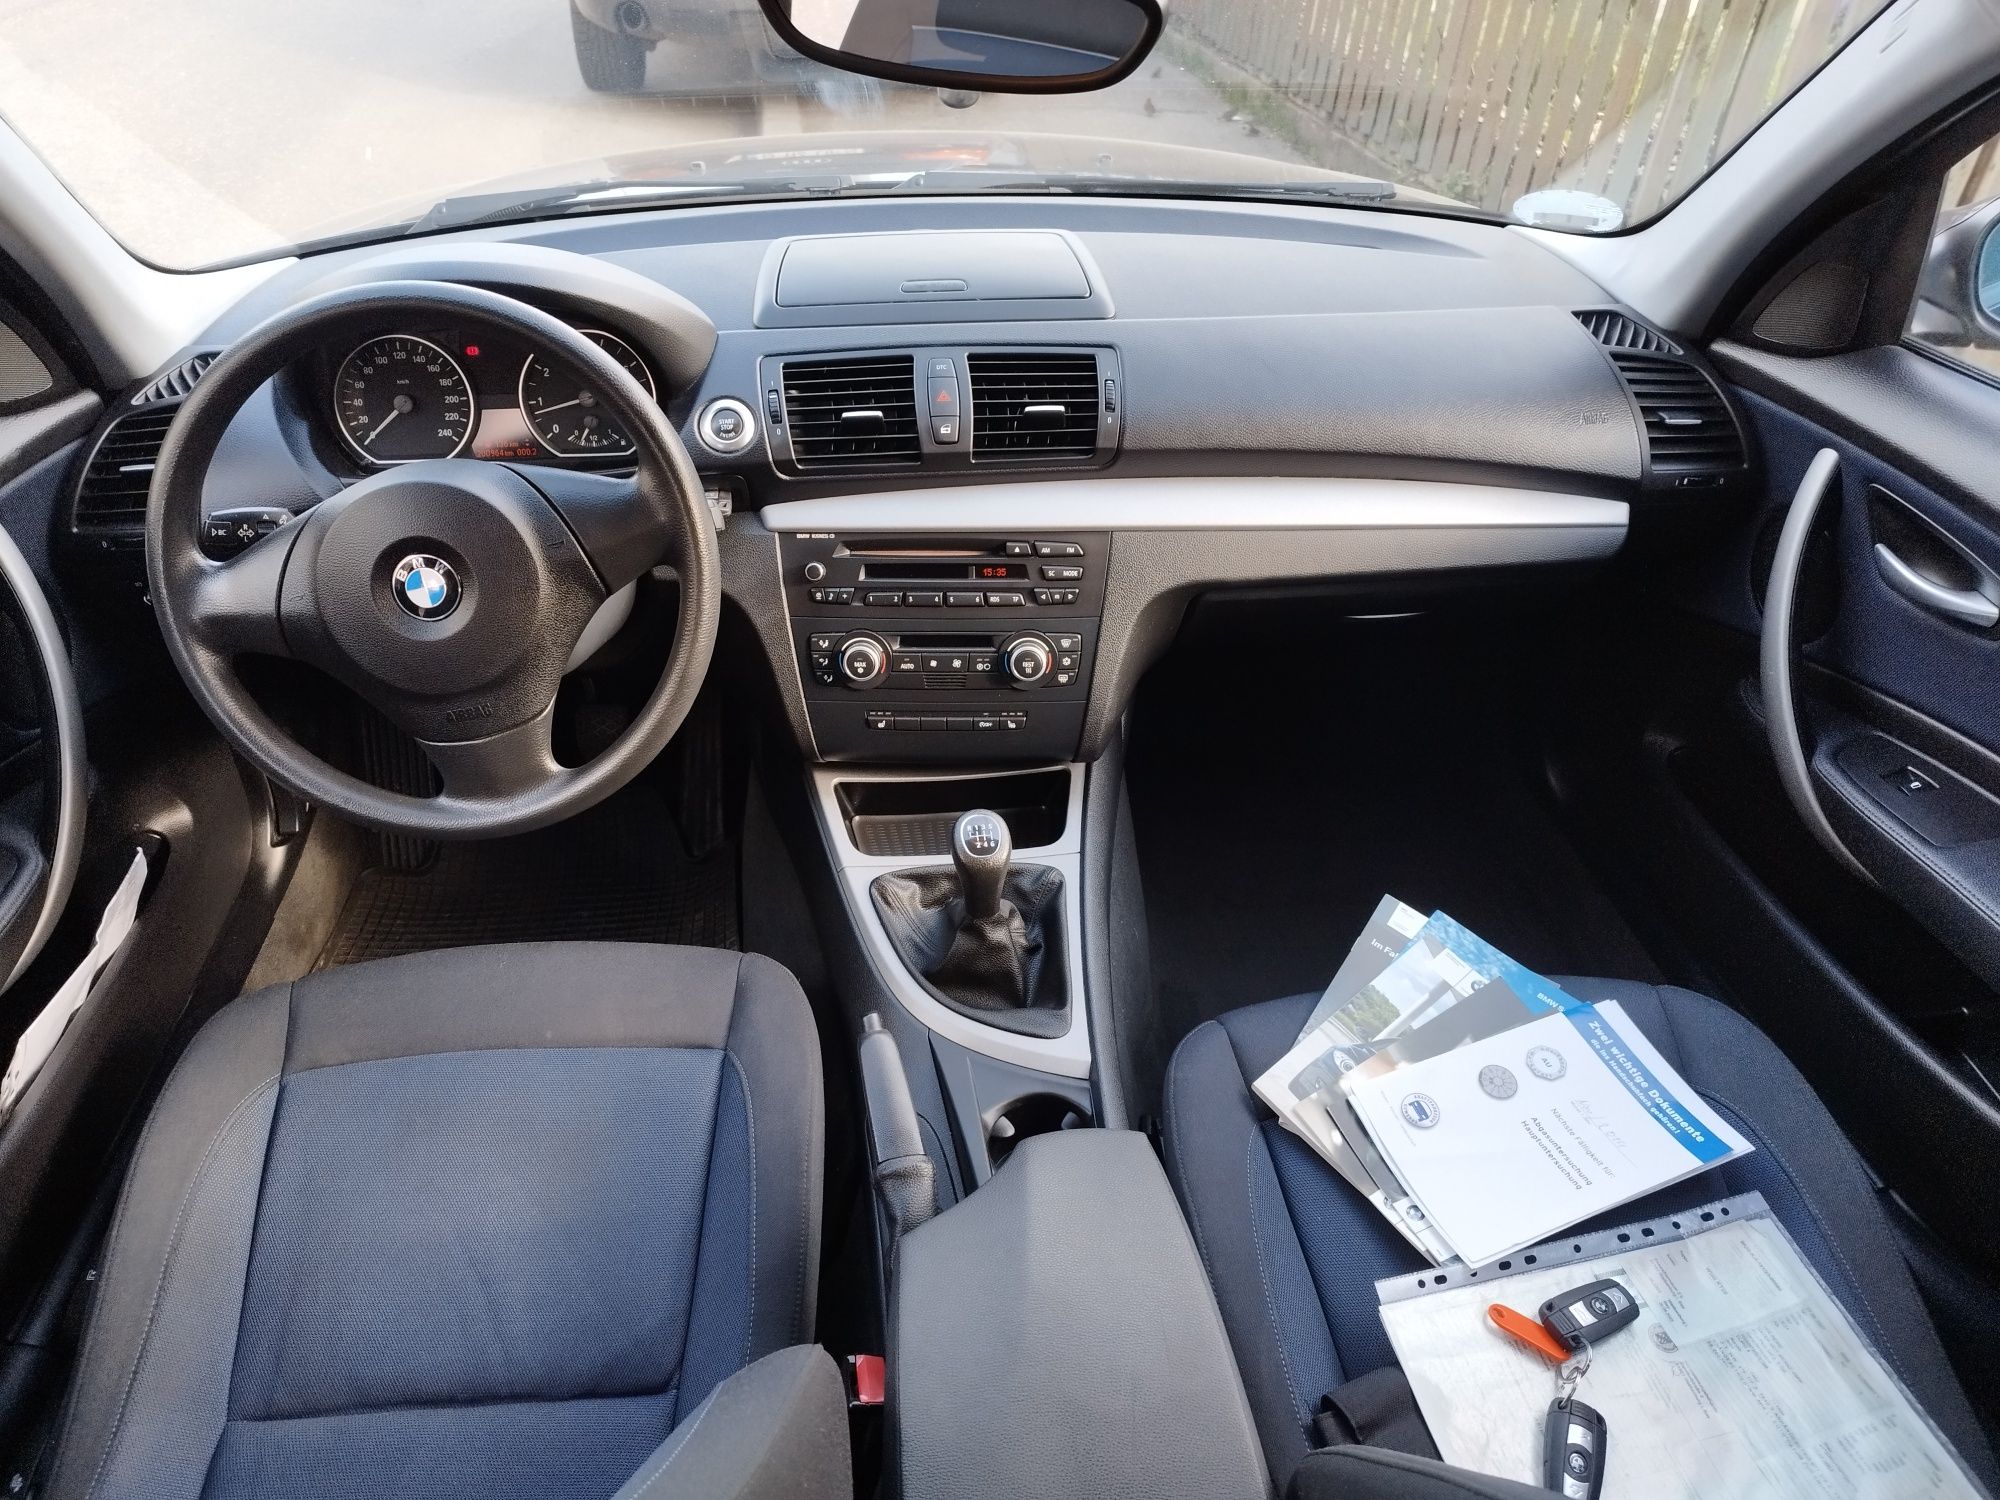 BMW seria 1 116i